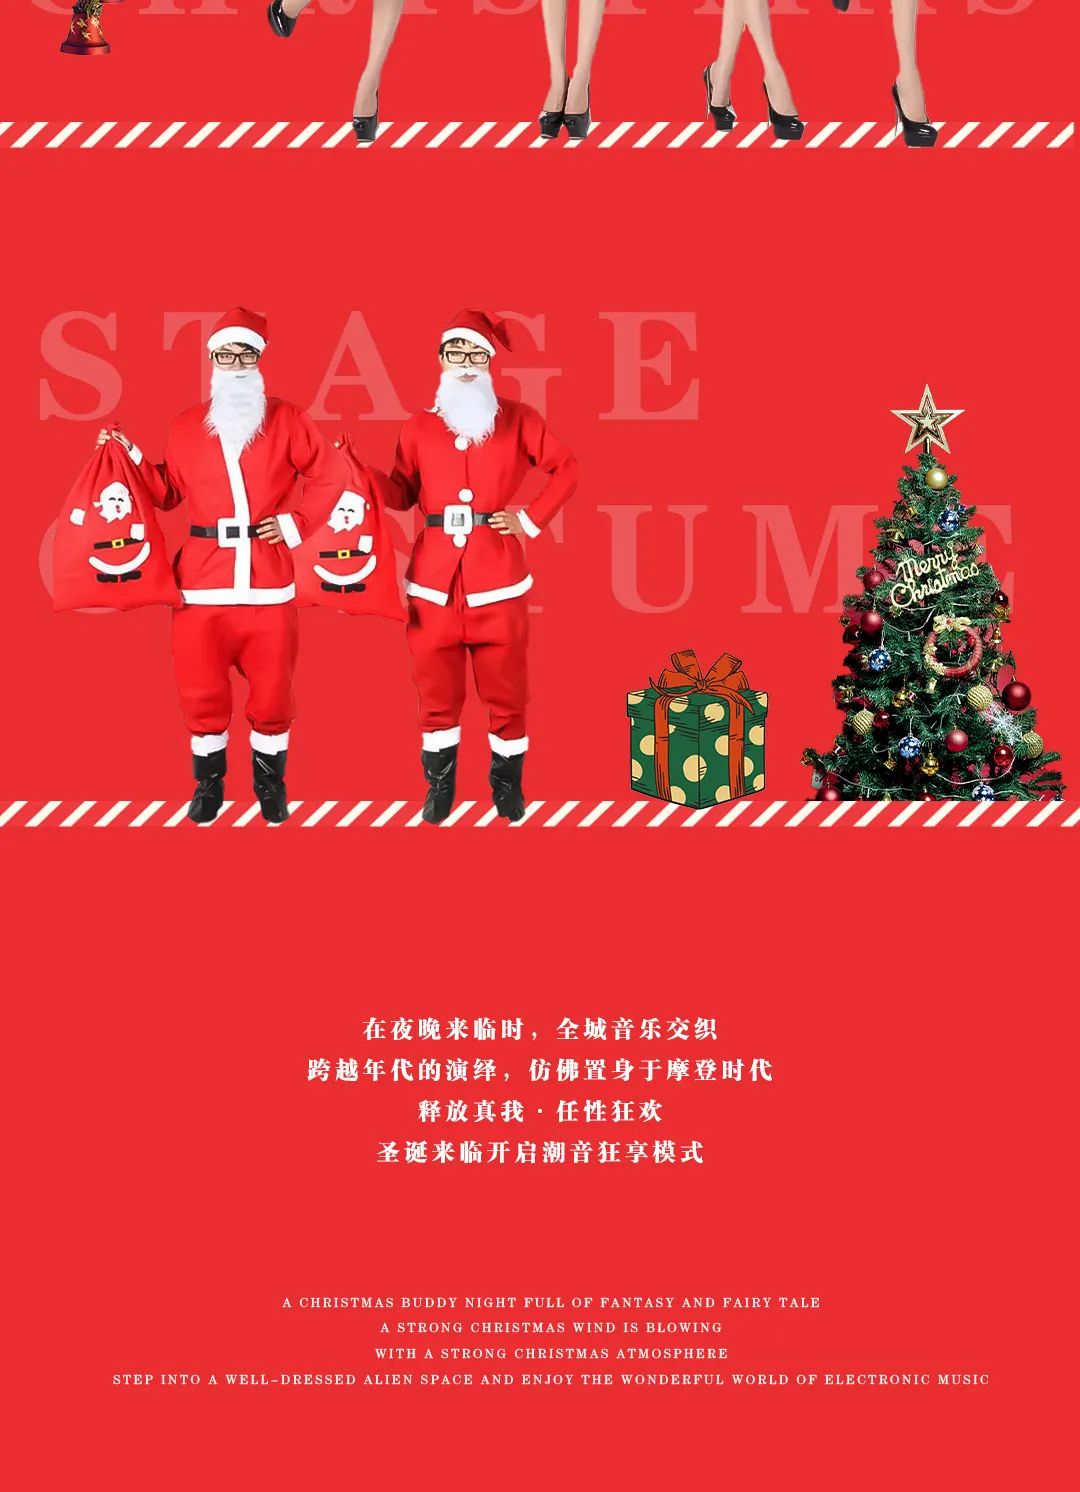 Fun Christmas丨12.24/25 # 圣诞的钟声即将敲响，开启您的专属《圣诞狂欢趴》-绵阳华夏酒吧/HUAXIA CLUB